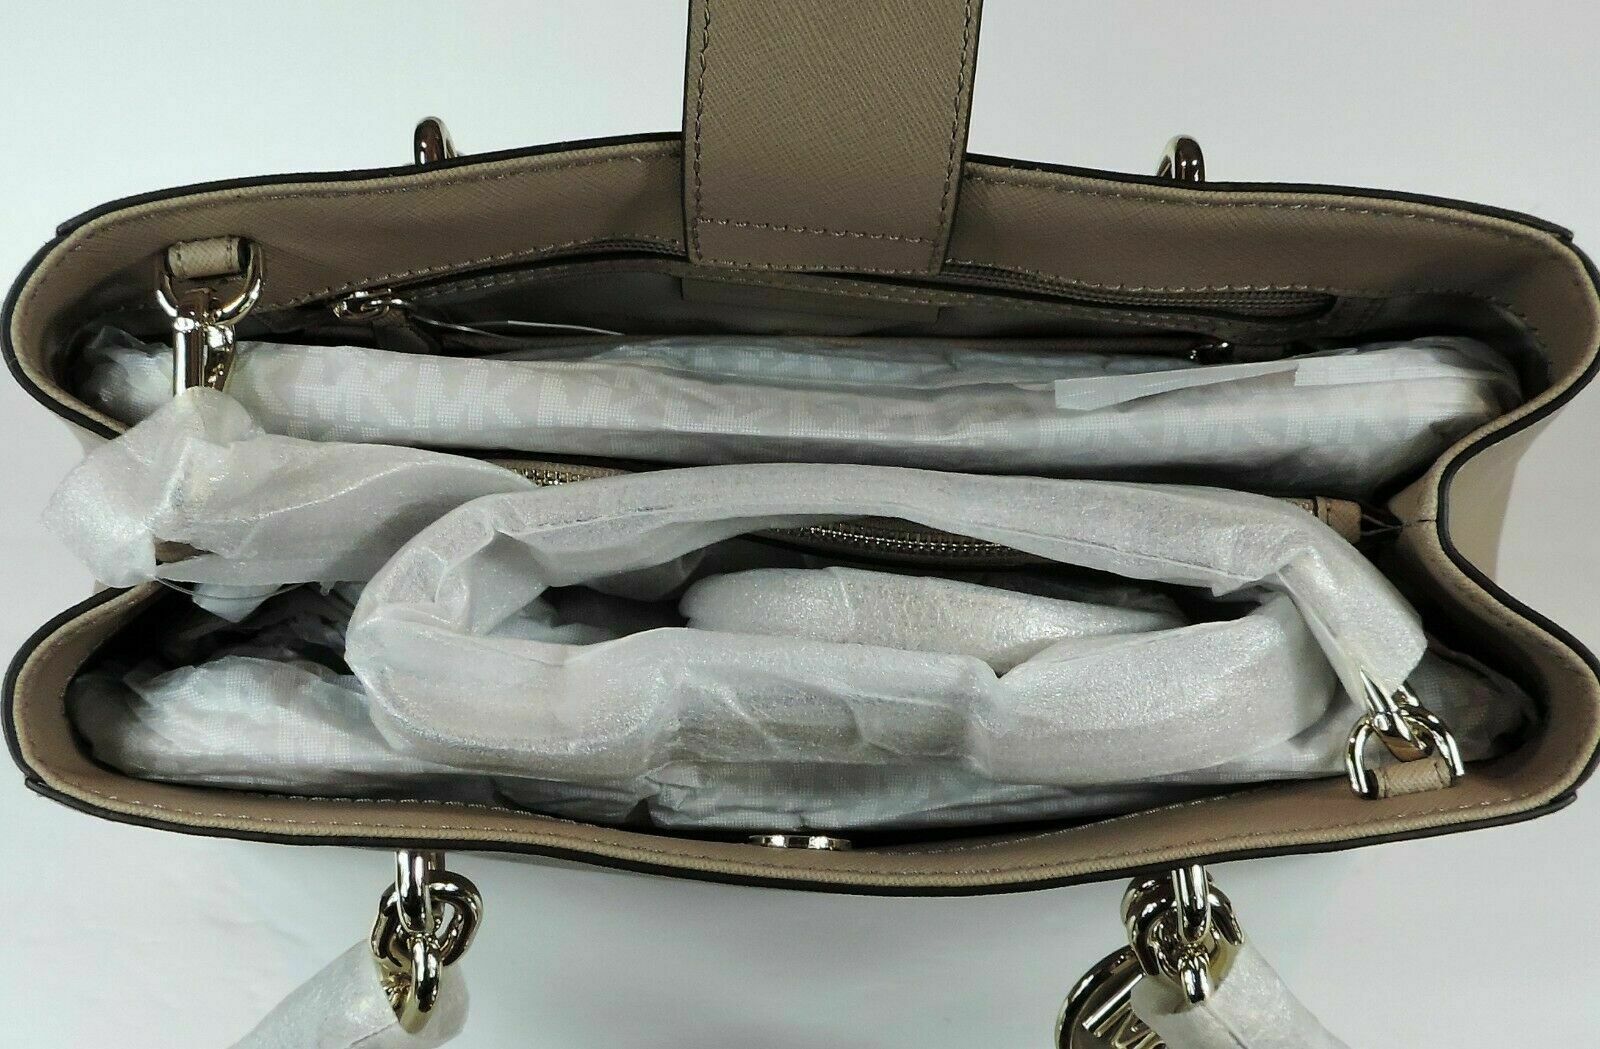 Michael Kors Jet Set Travel Large Leather Tote- Truffle